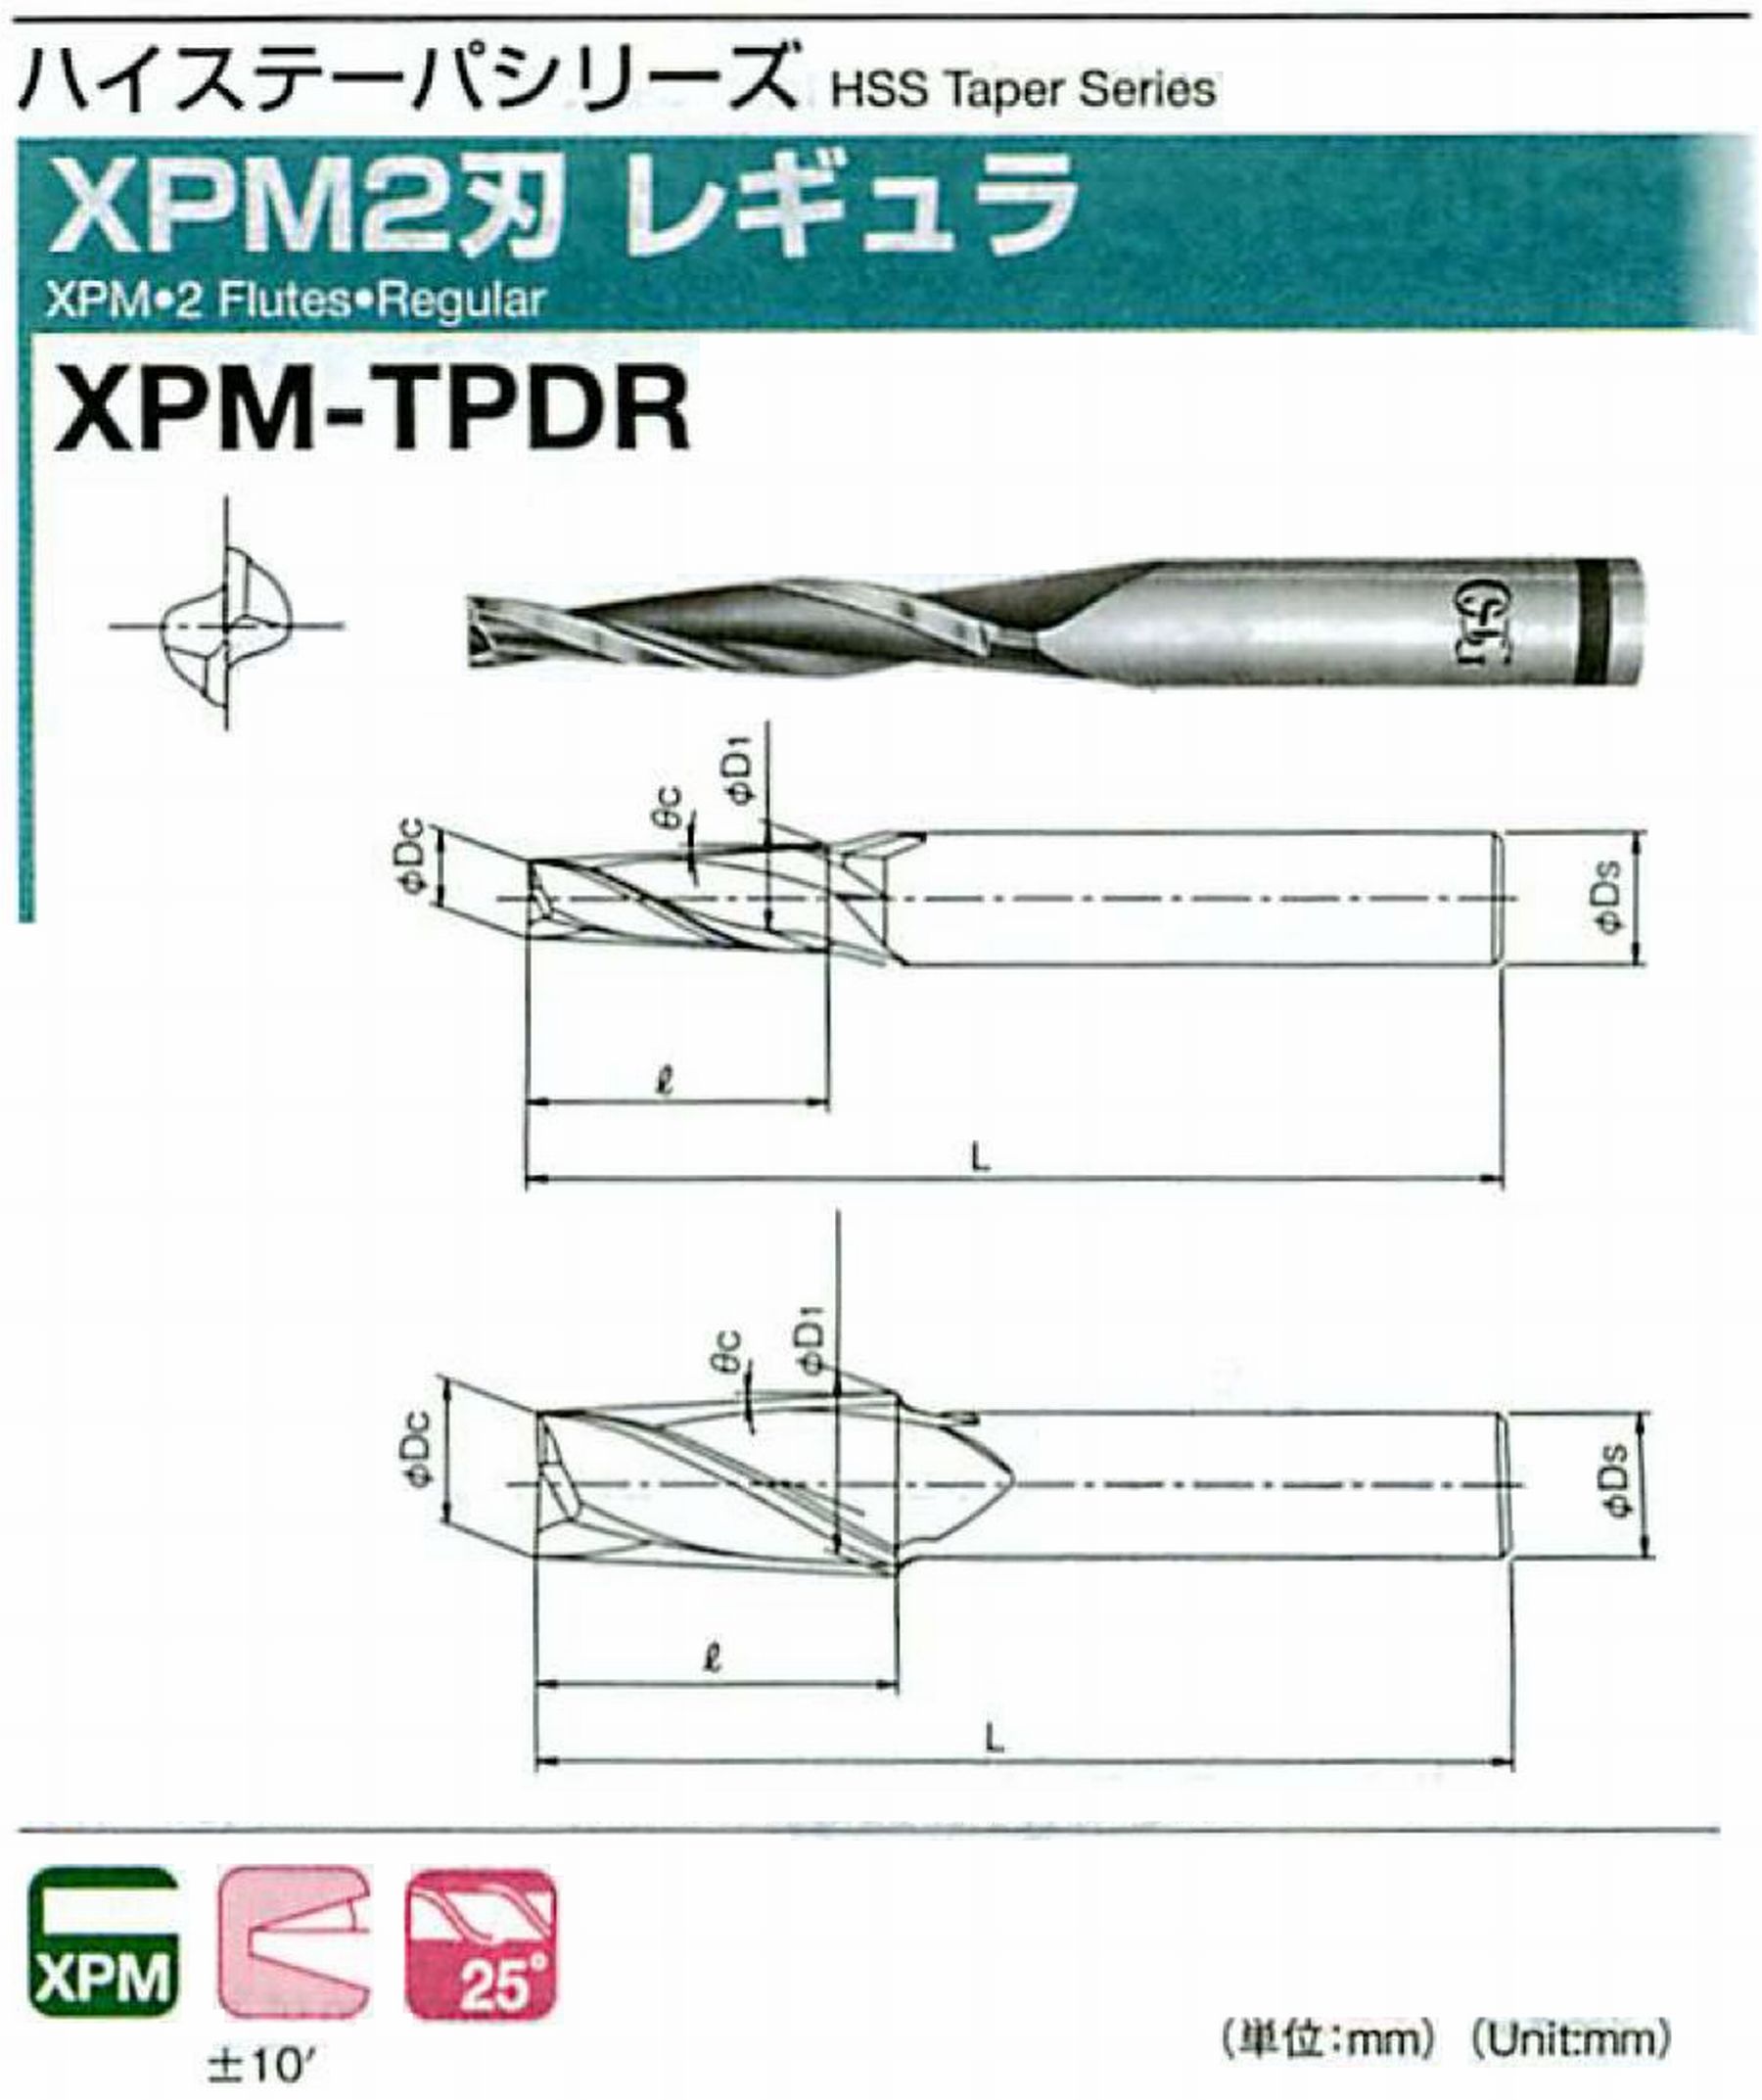 オーエスジー/OSG XPM2刃 レギュラ XPM-TPDR 外径×刃部テーパ半角2.5×0.5° 全長61 刃長17 シャンク径6mm 大端径2.8